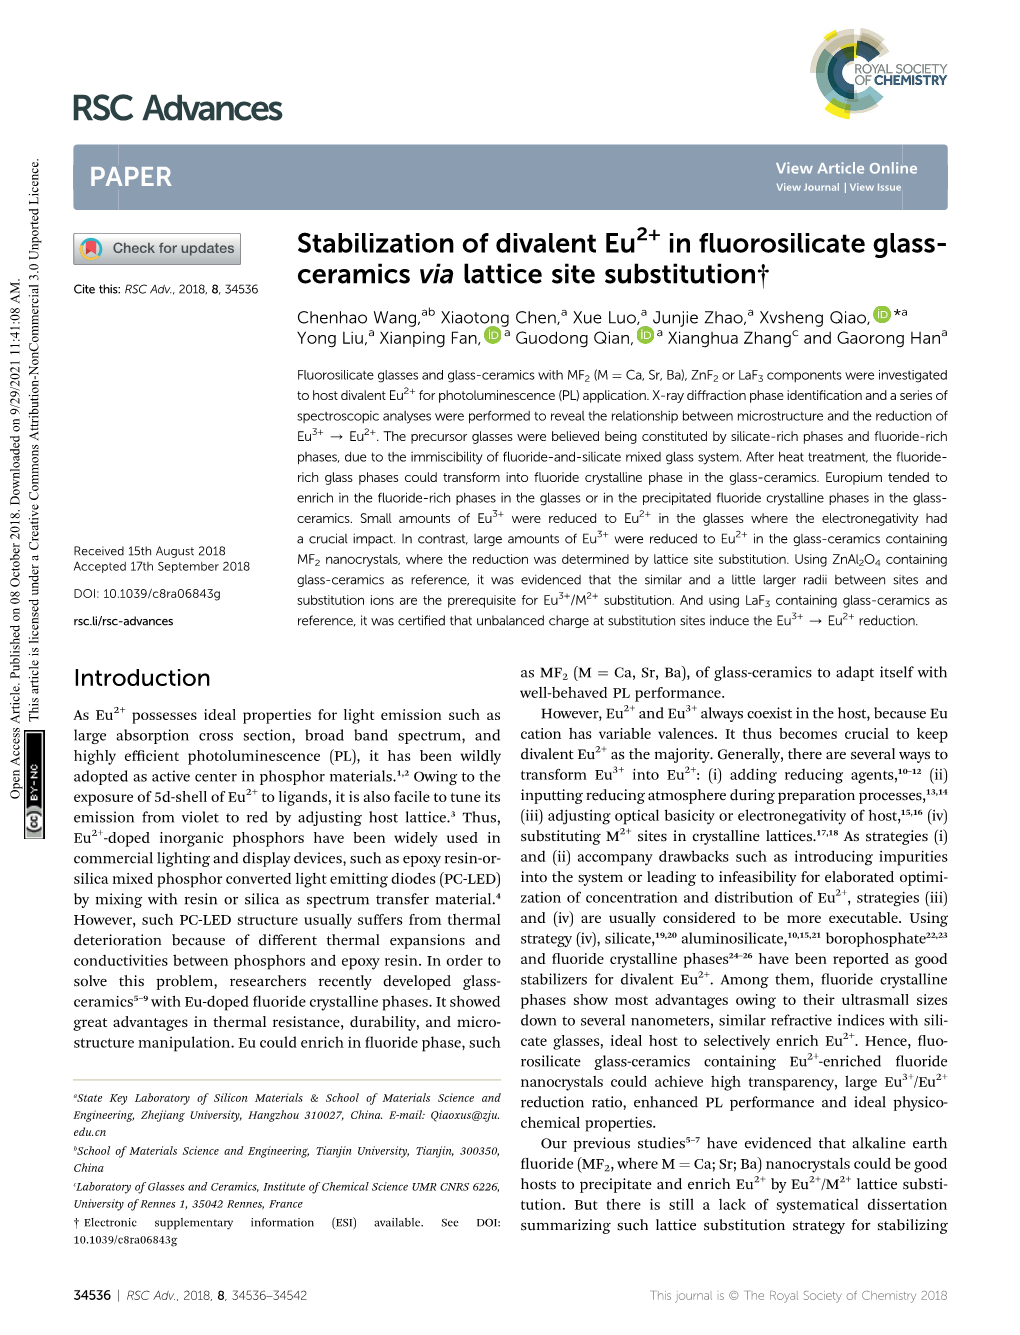 Stabilization of Divalent Eu2+ in Fluorosilicate